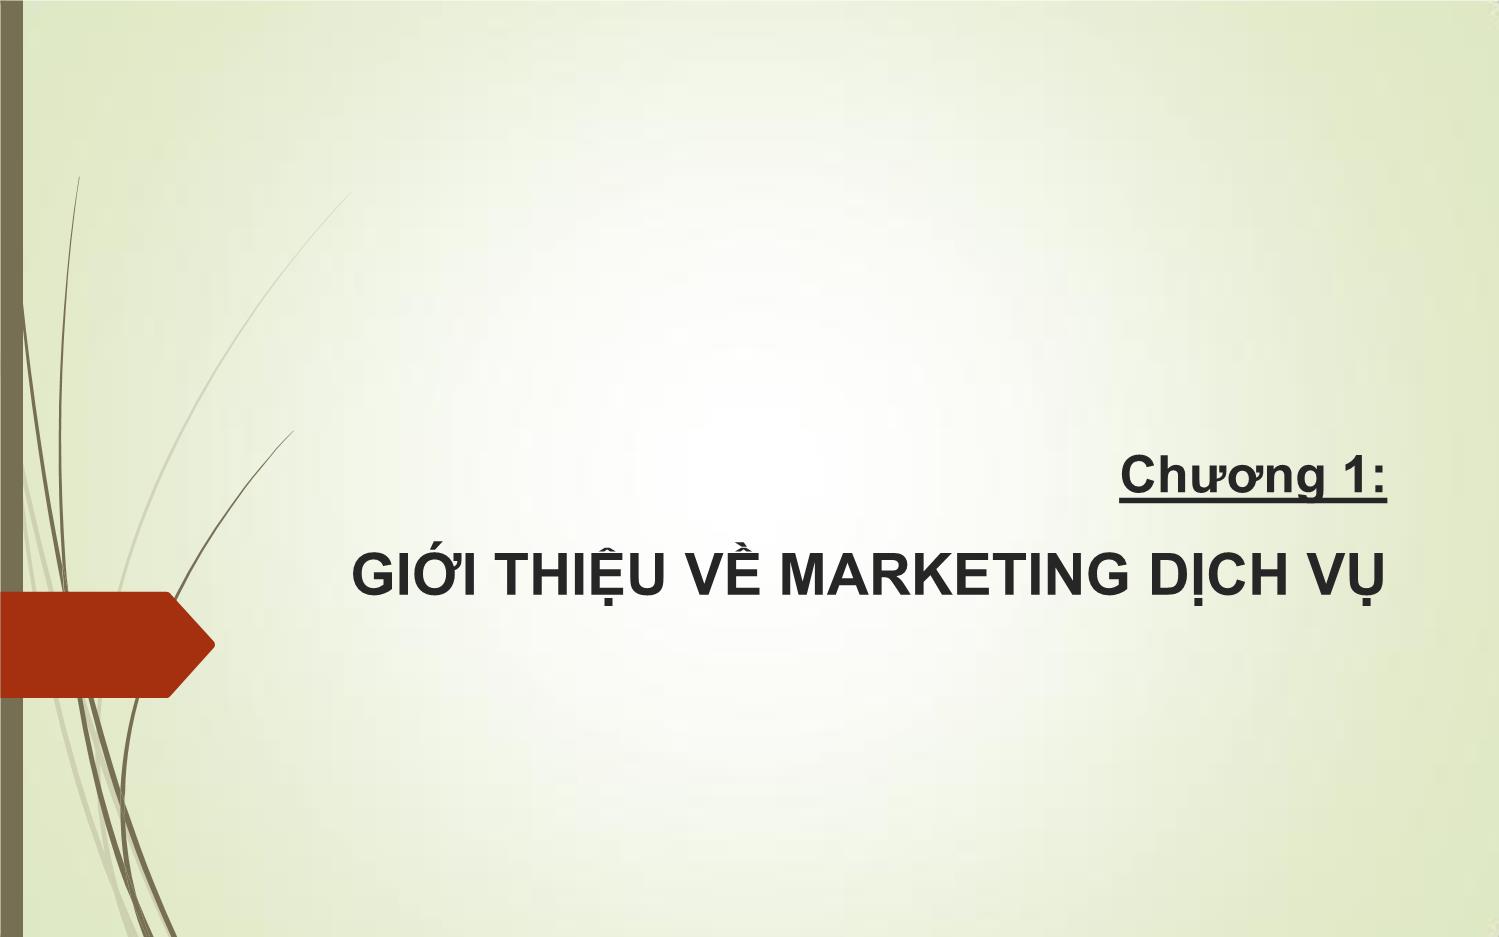 Bài giảng Marketing dịch vụ trang 5